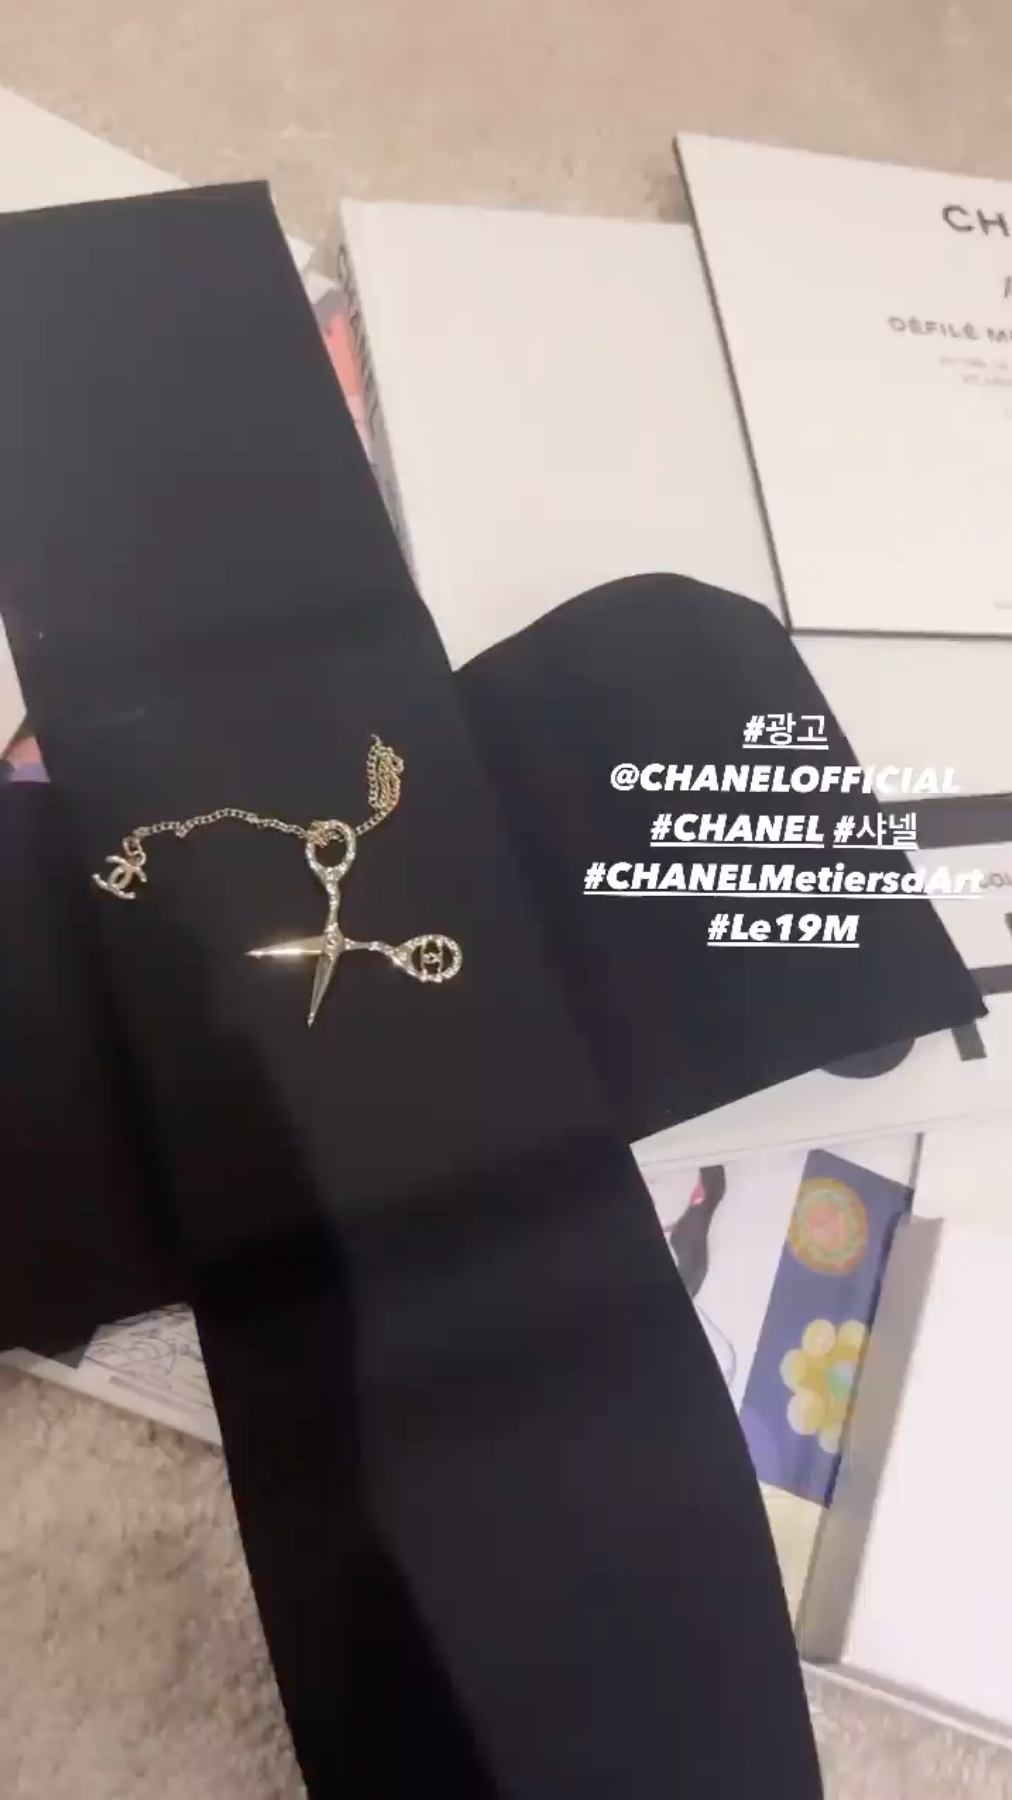 Chanel tặng cây kéo vàng cho Jennie, netizen vội đóng đinh: Kéo cắt... duyên âm hay gì? - Ảnh 2.